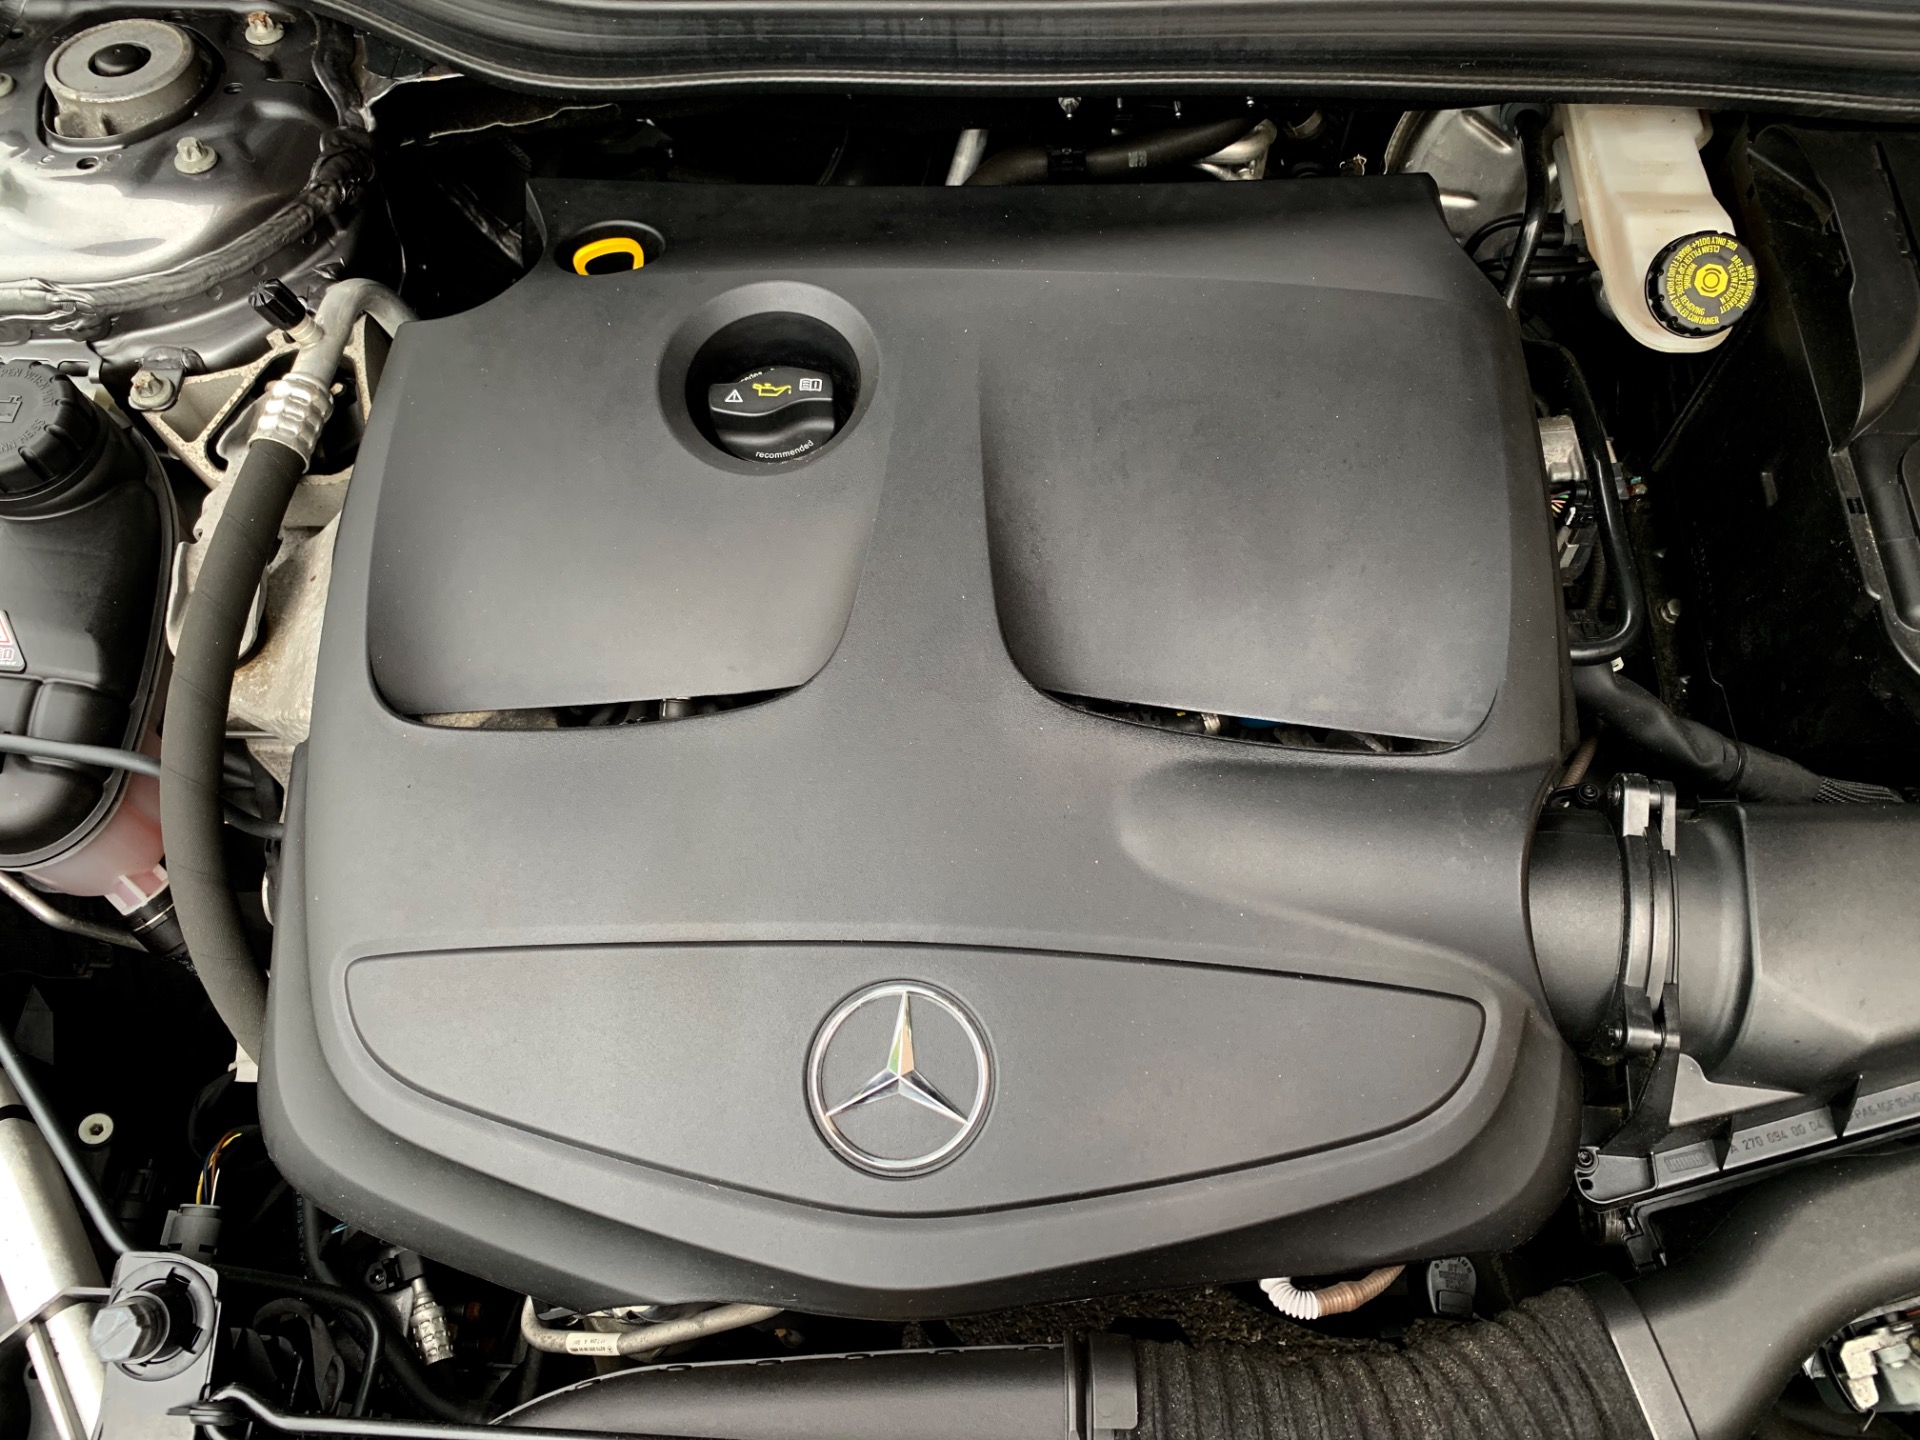 Used-2018-Mercedes-Benz-GLA-GLA-250-4MATIC